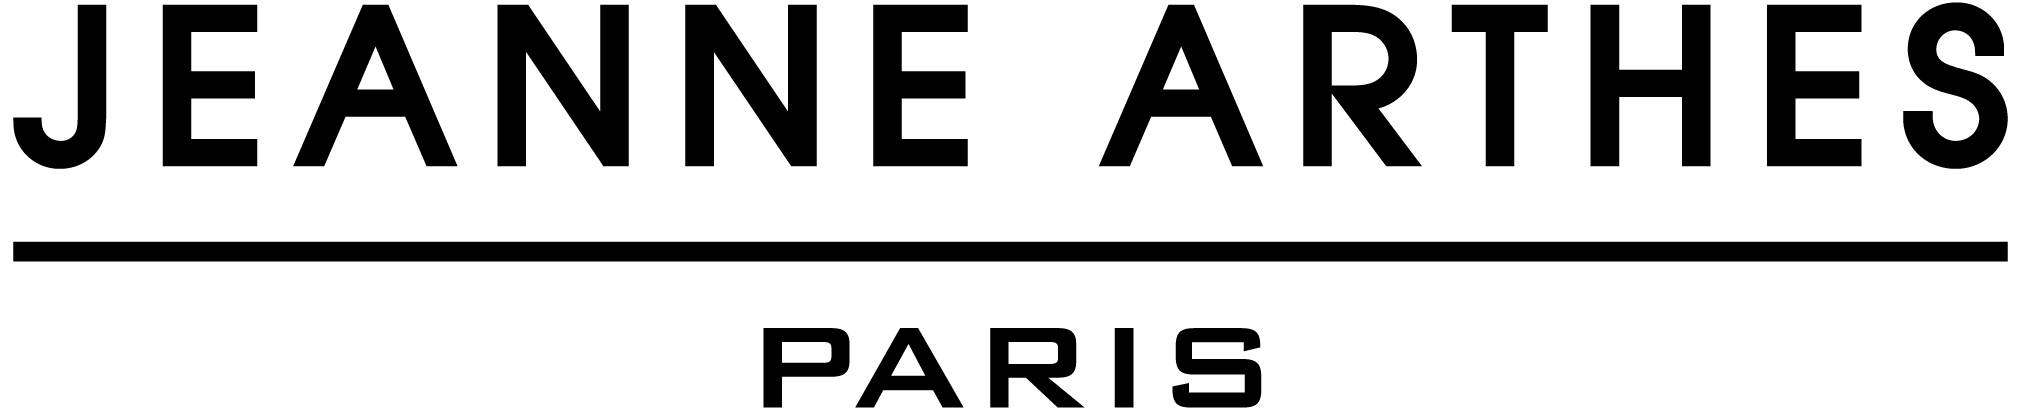 Jeanne Arthes Paris